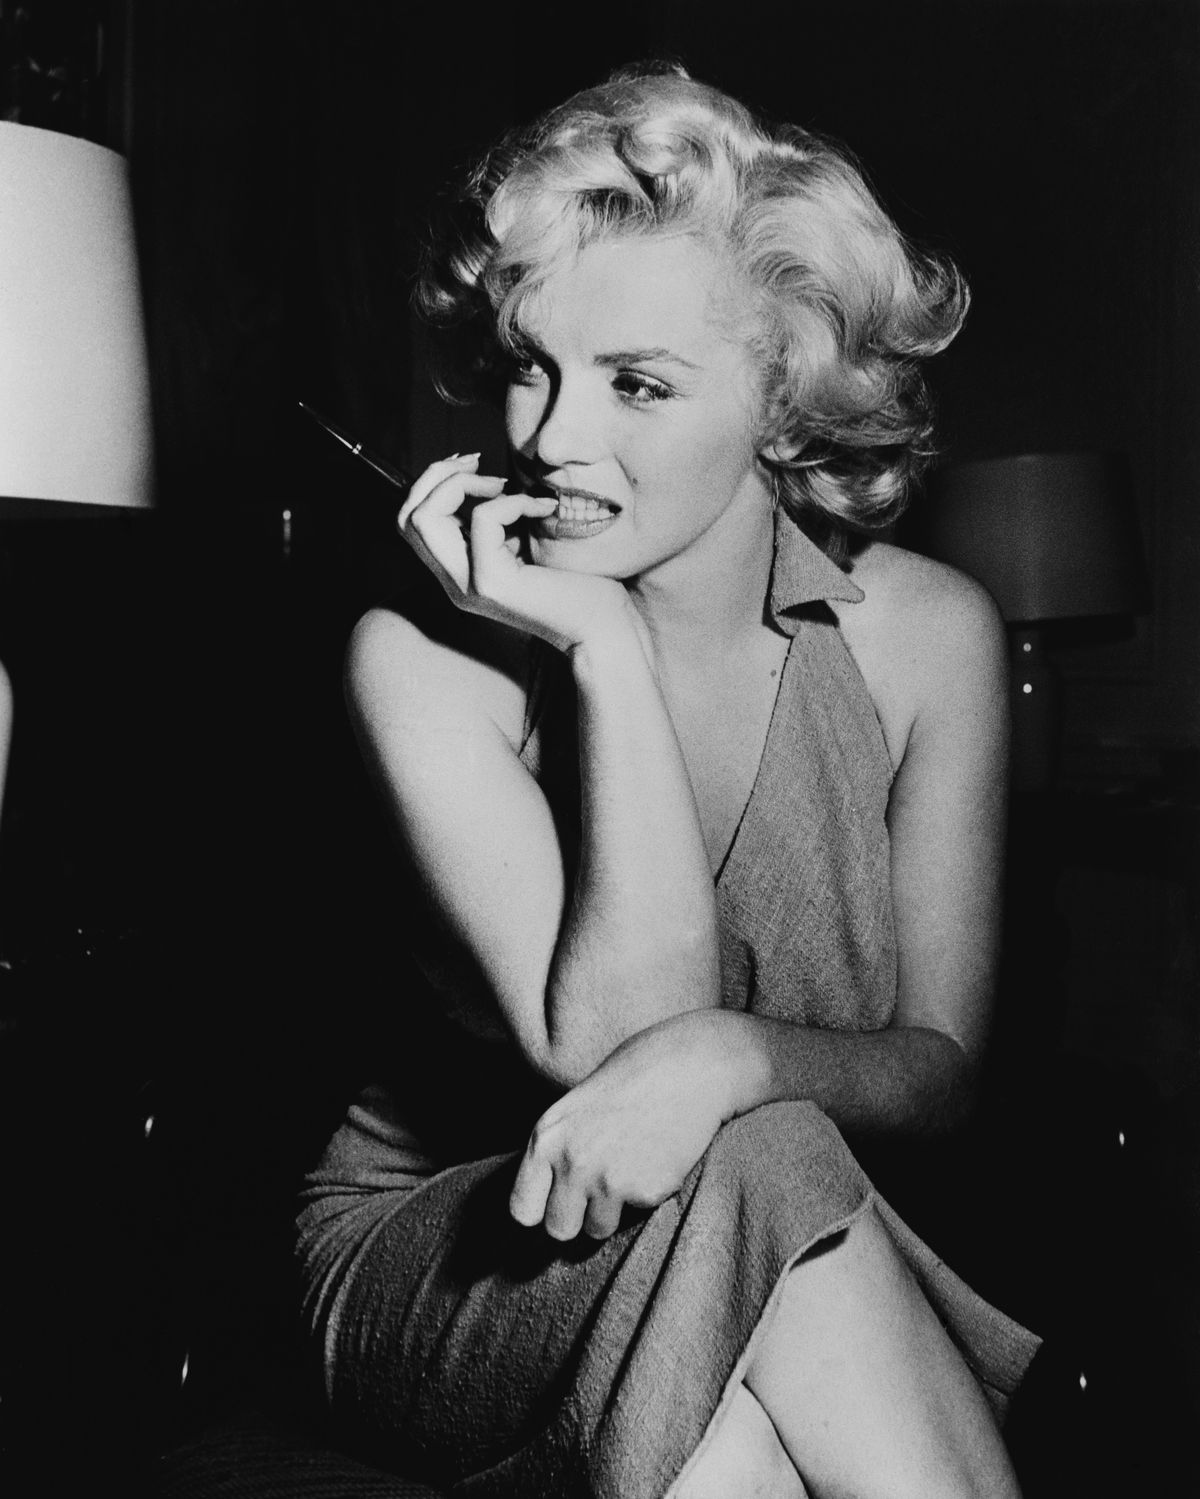 Vintage 60s Film Star Nudes - The explosive real story behind Marilyn Monroe film Blonde